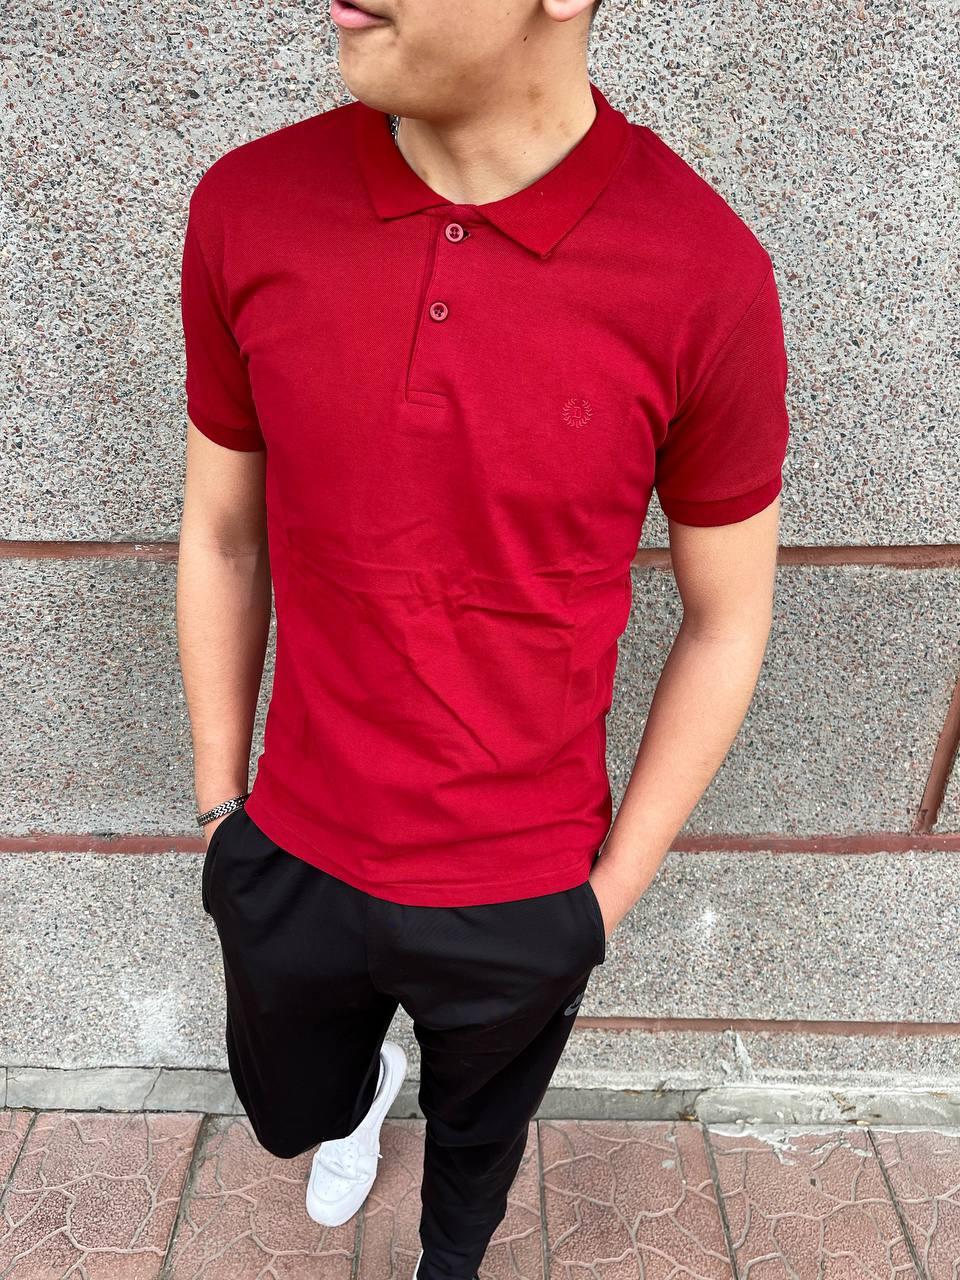 Чоловіча футболка поло червона з лакости з коміром на ґудзиках на літо